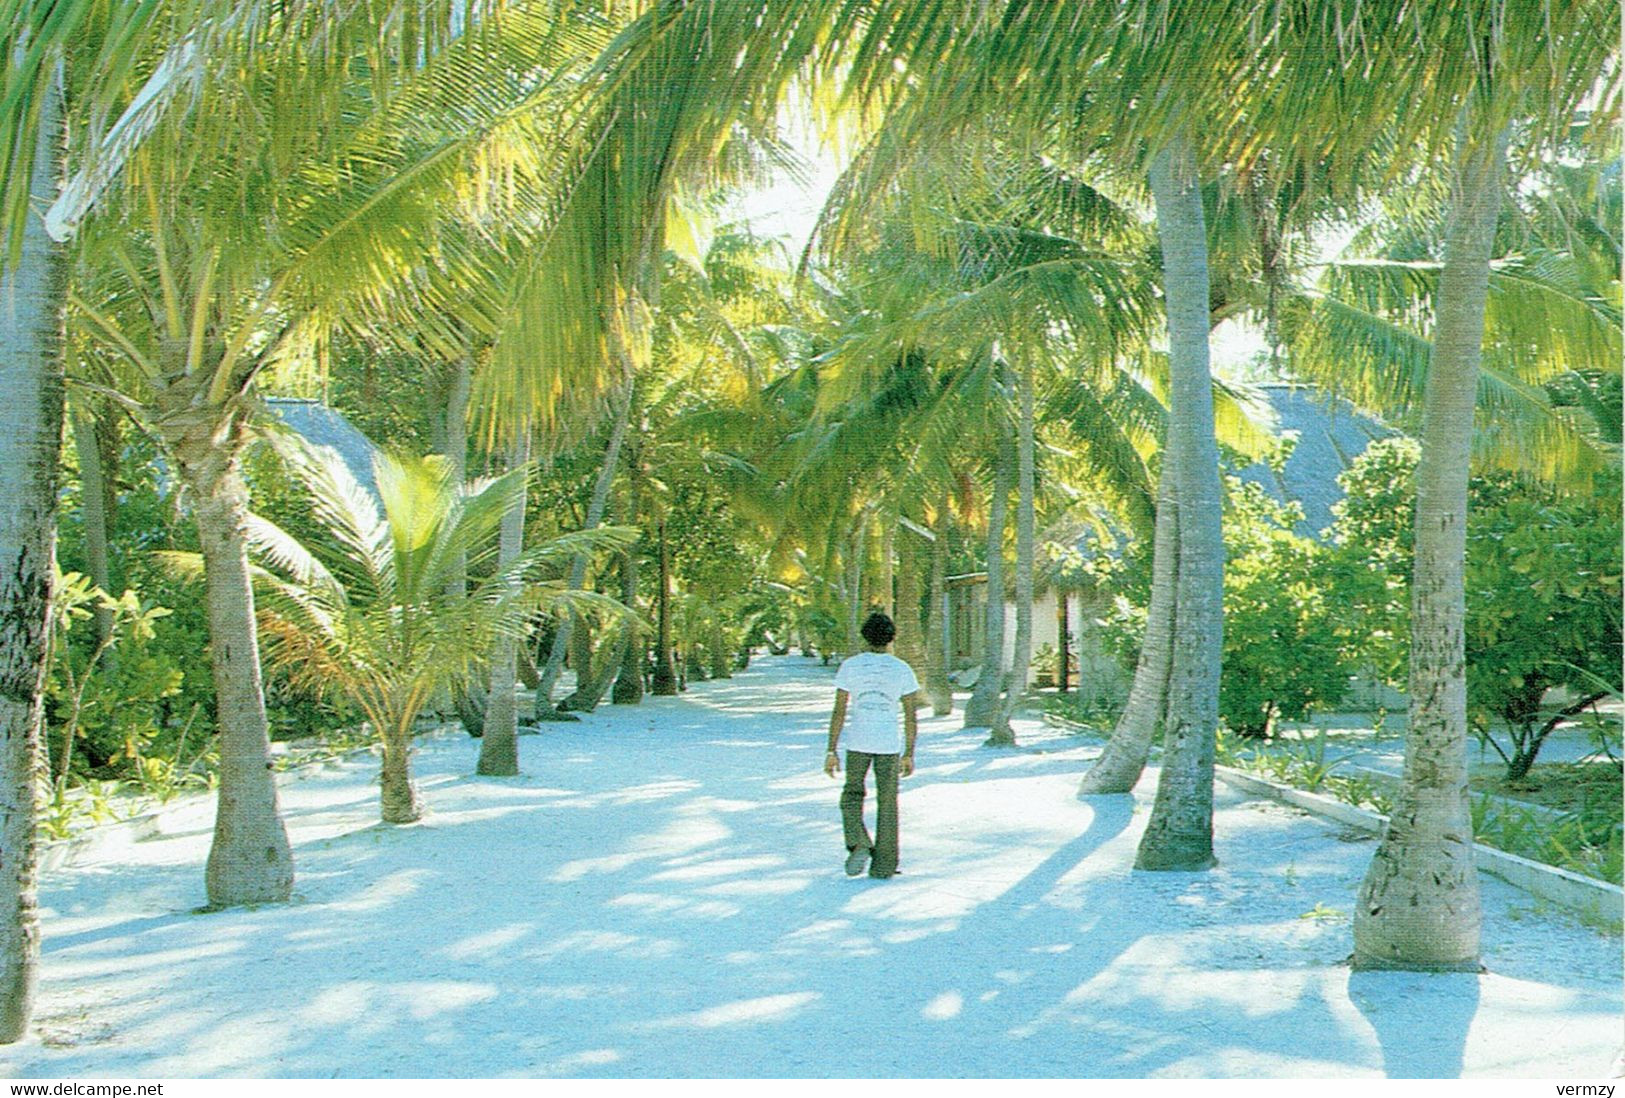 LANKAN FINOLU - A Visitors Dream - Maldives